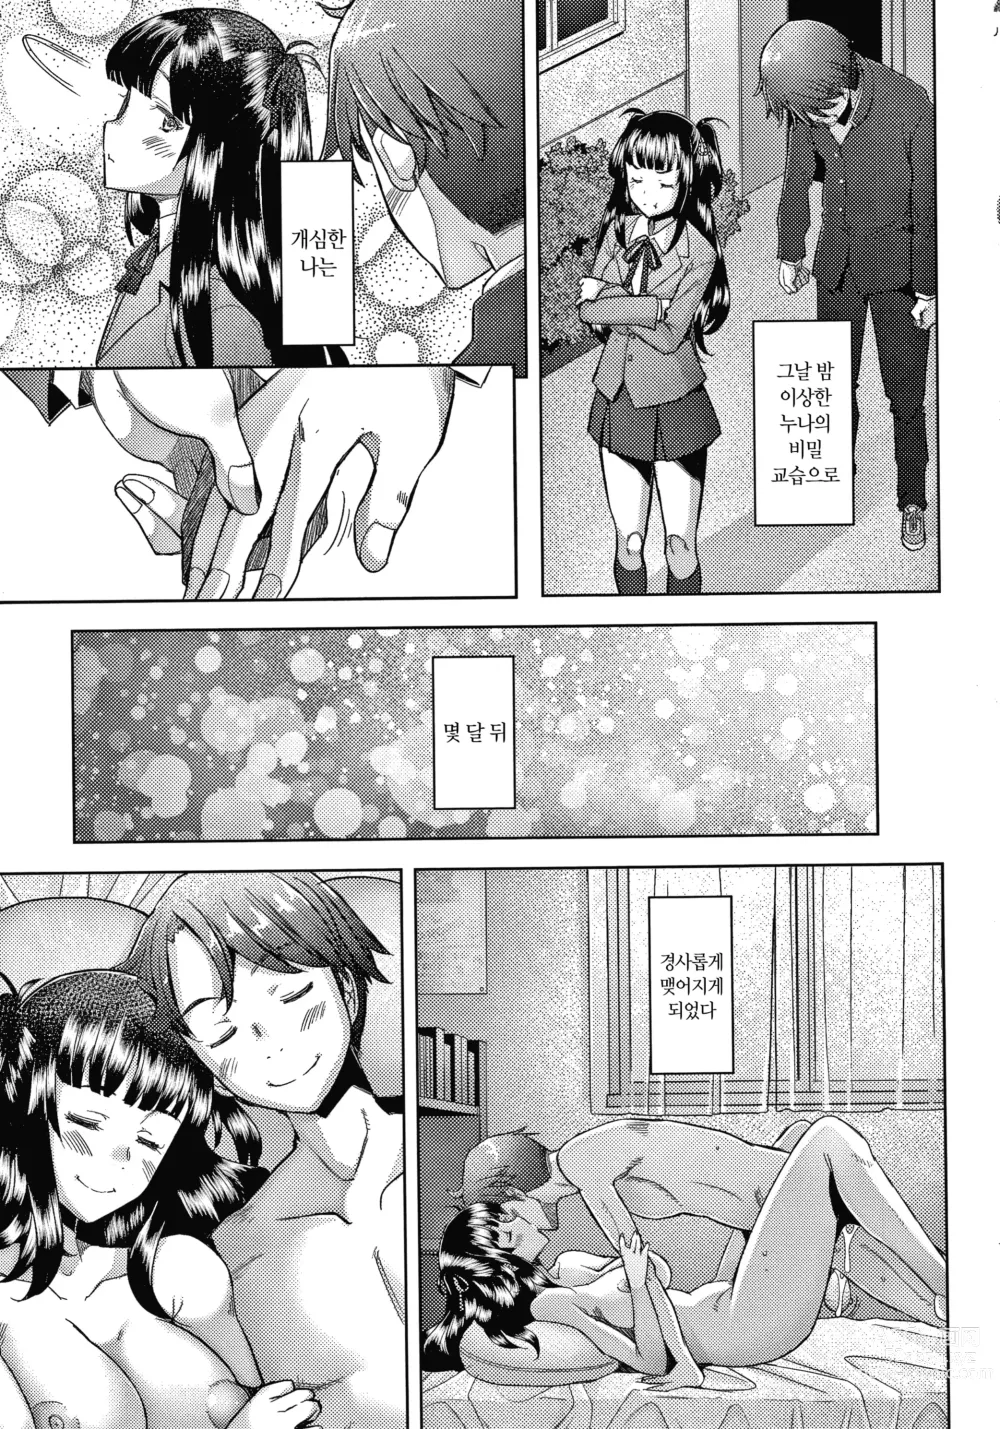 Page 194 of manga 유부녀도 사랑하고 싶어 ~노콘 수정으로 임신하고 싶은 유부녀들~